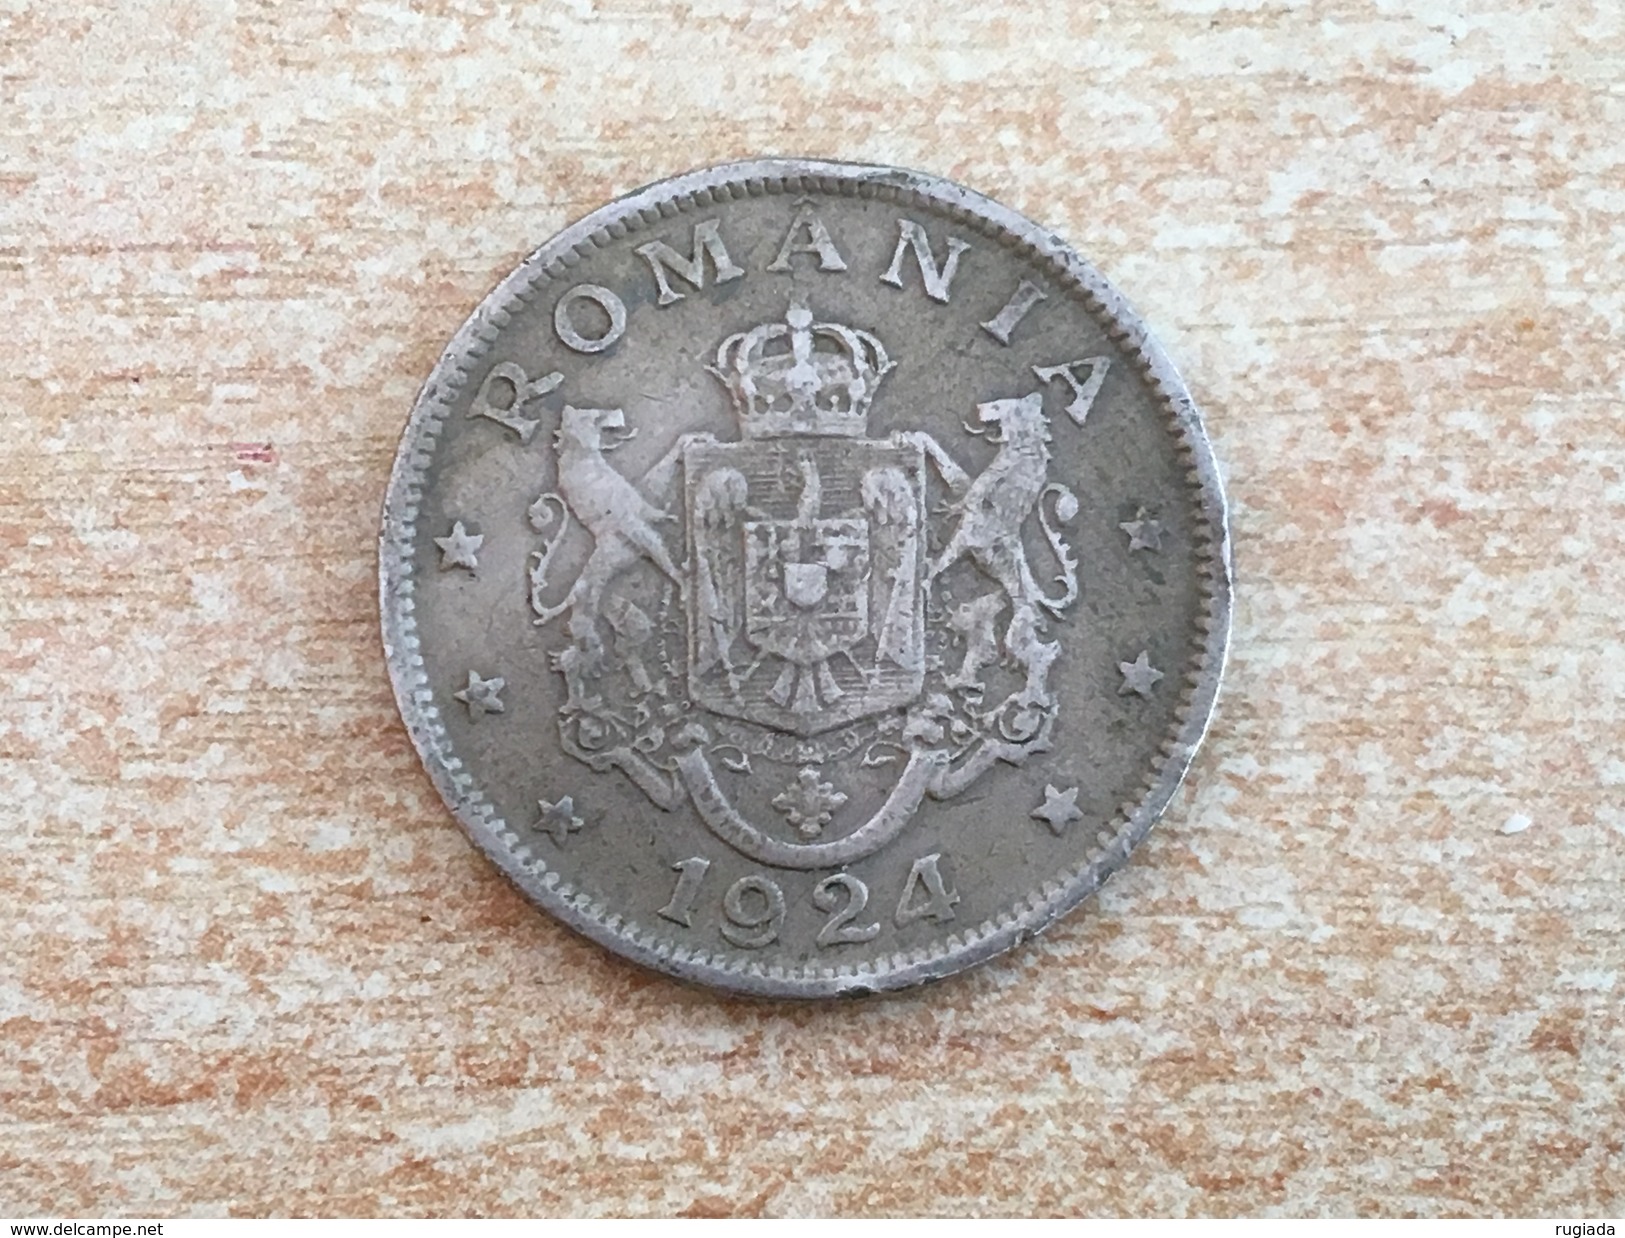 1924 Romania 2 Lei Coin - Very Fine - Romania